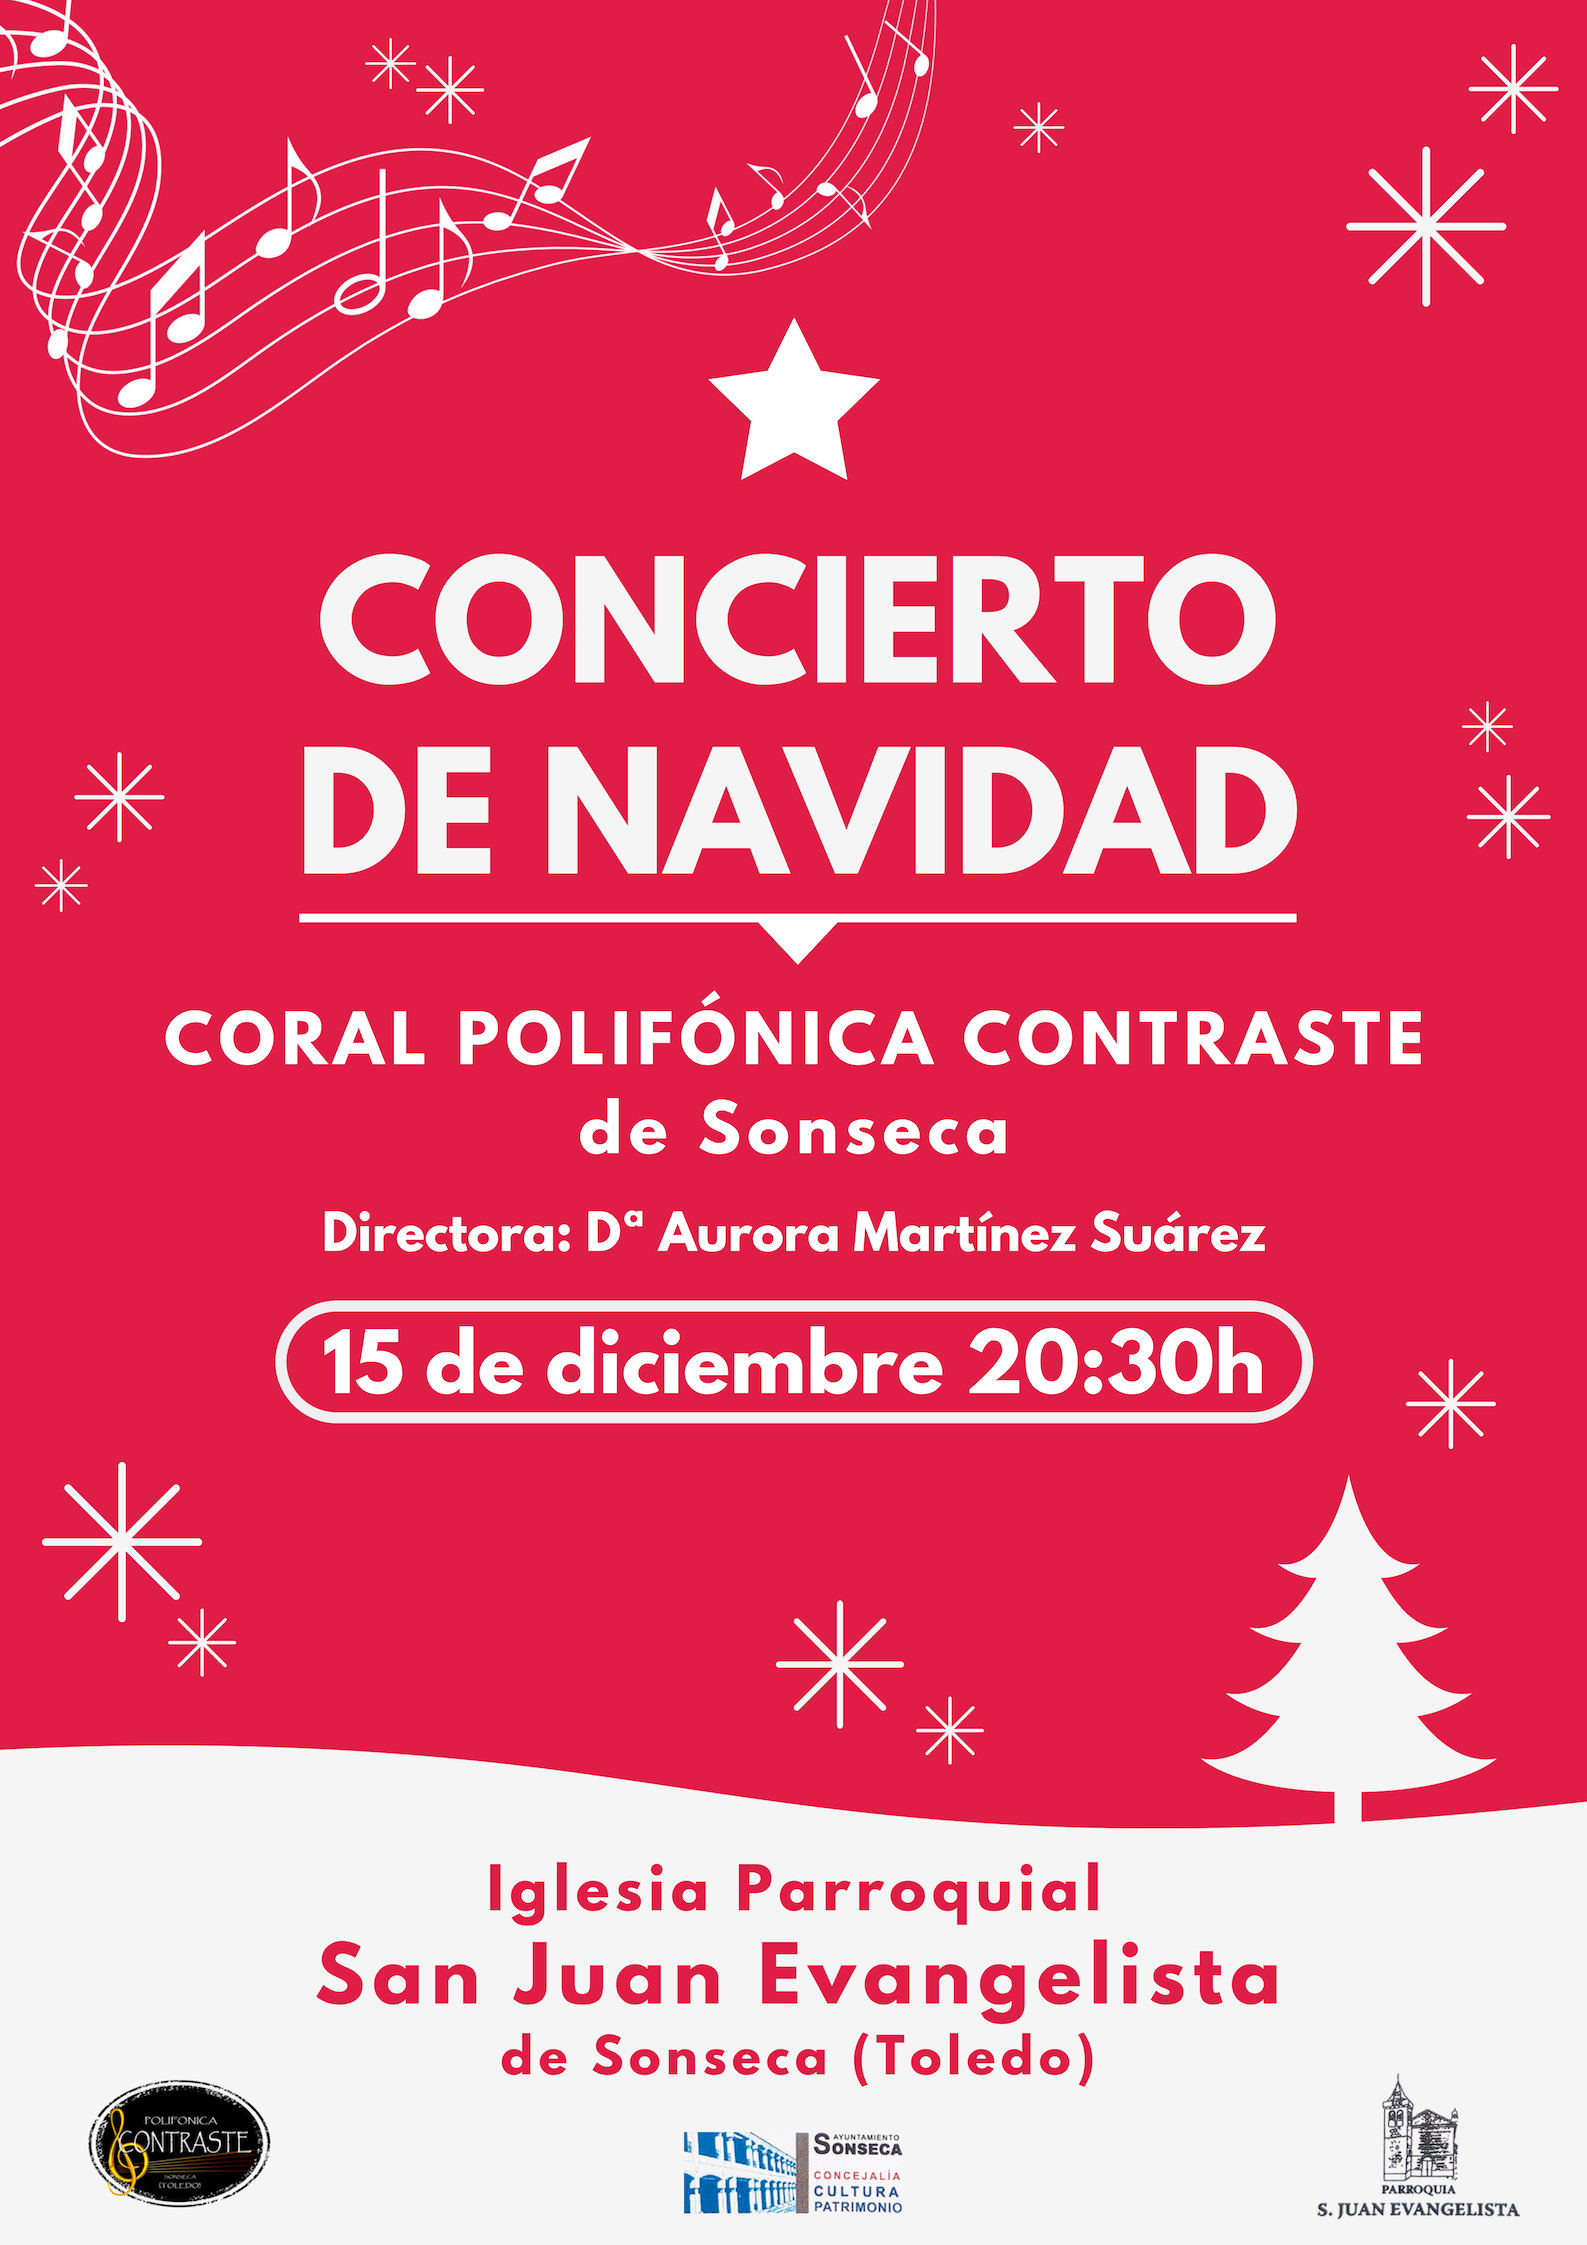 ConciertoNavidad2017